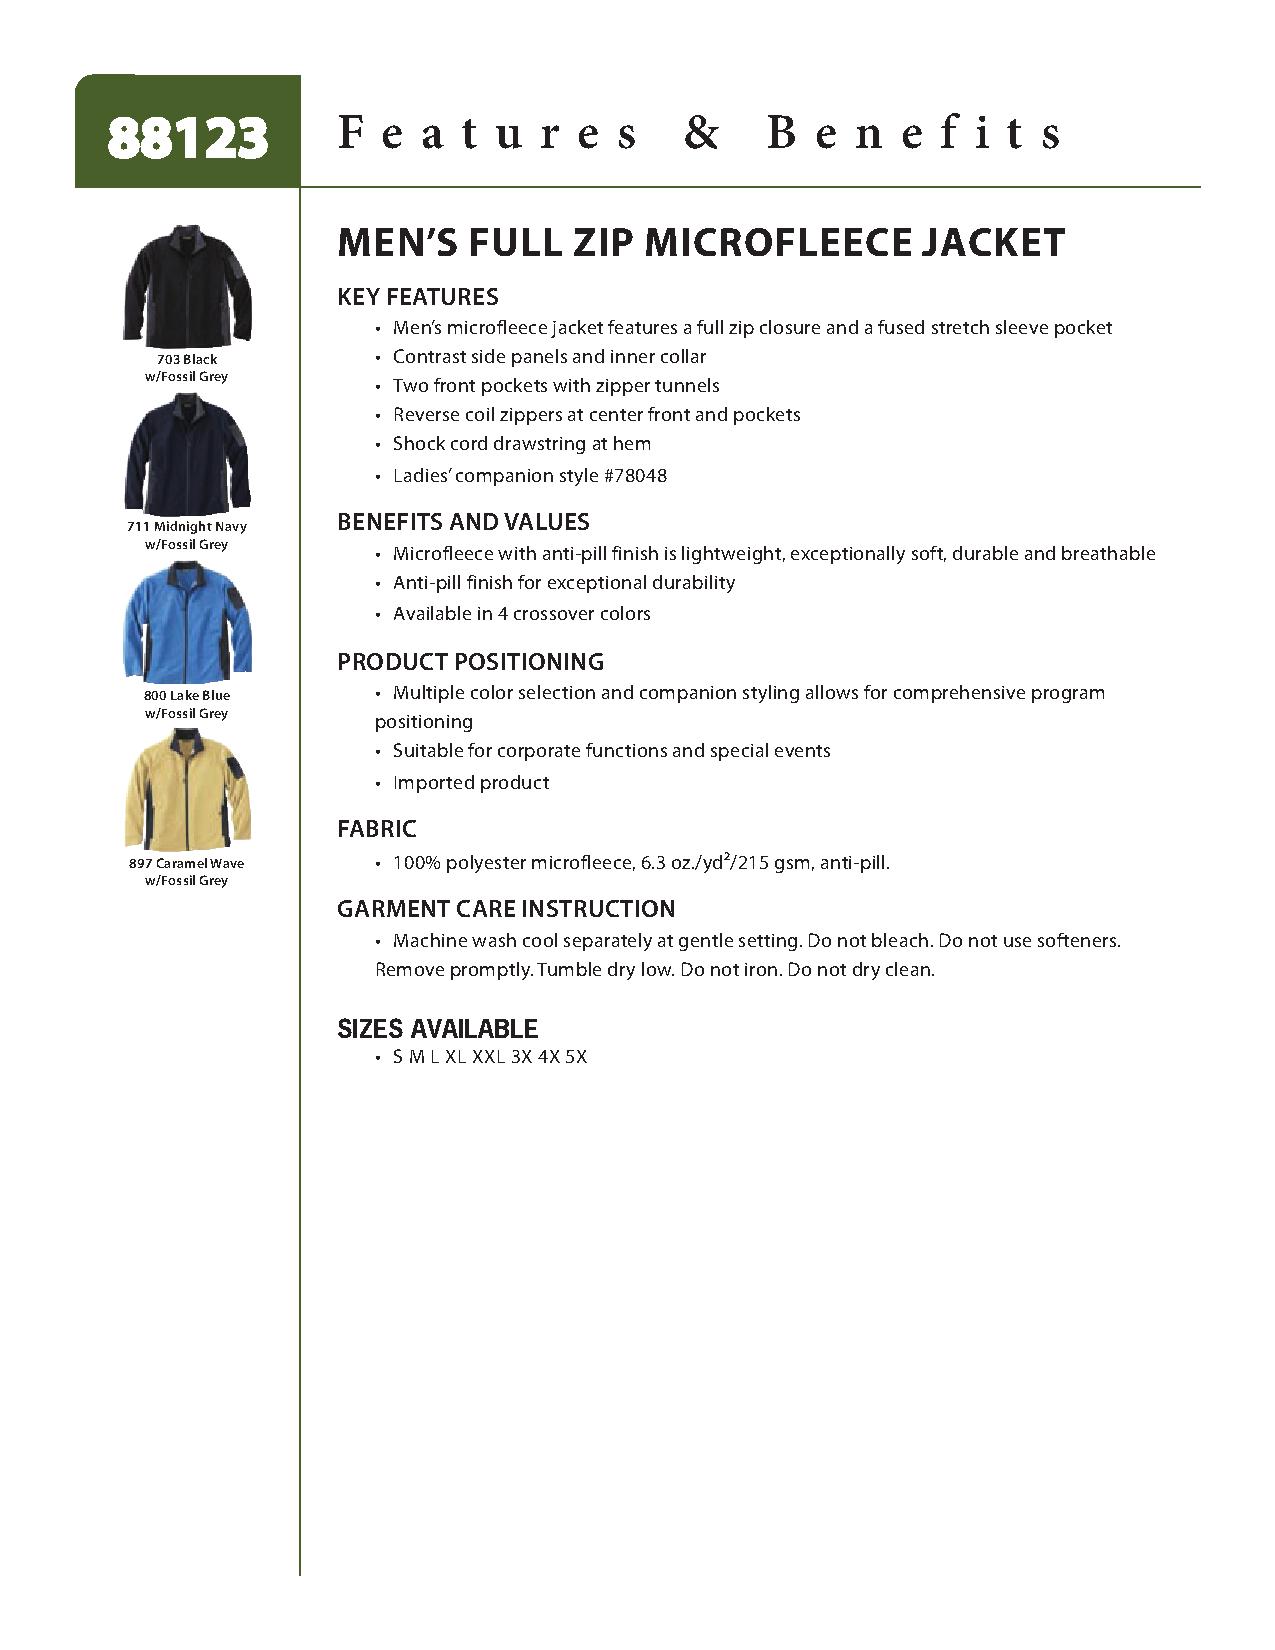 North End 88123 - Men's Full-Zip Microfleece Jacket